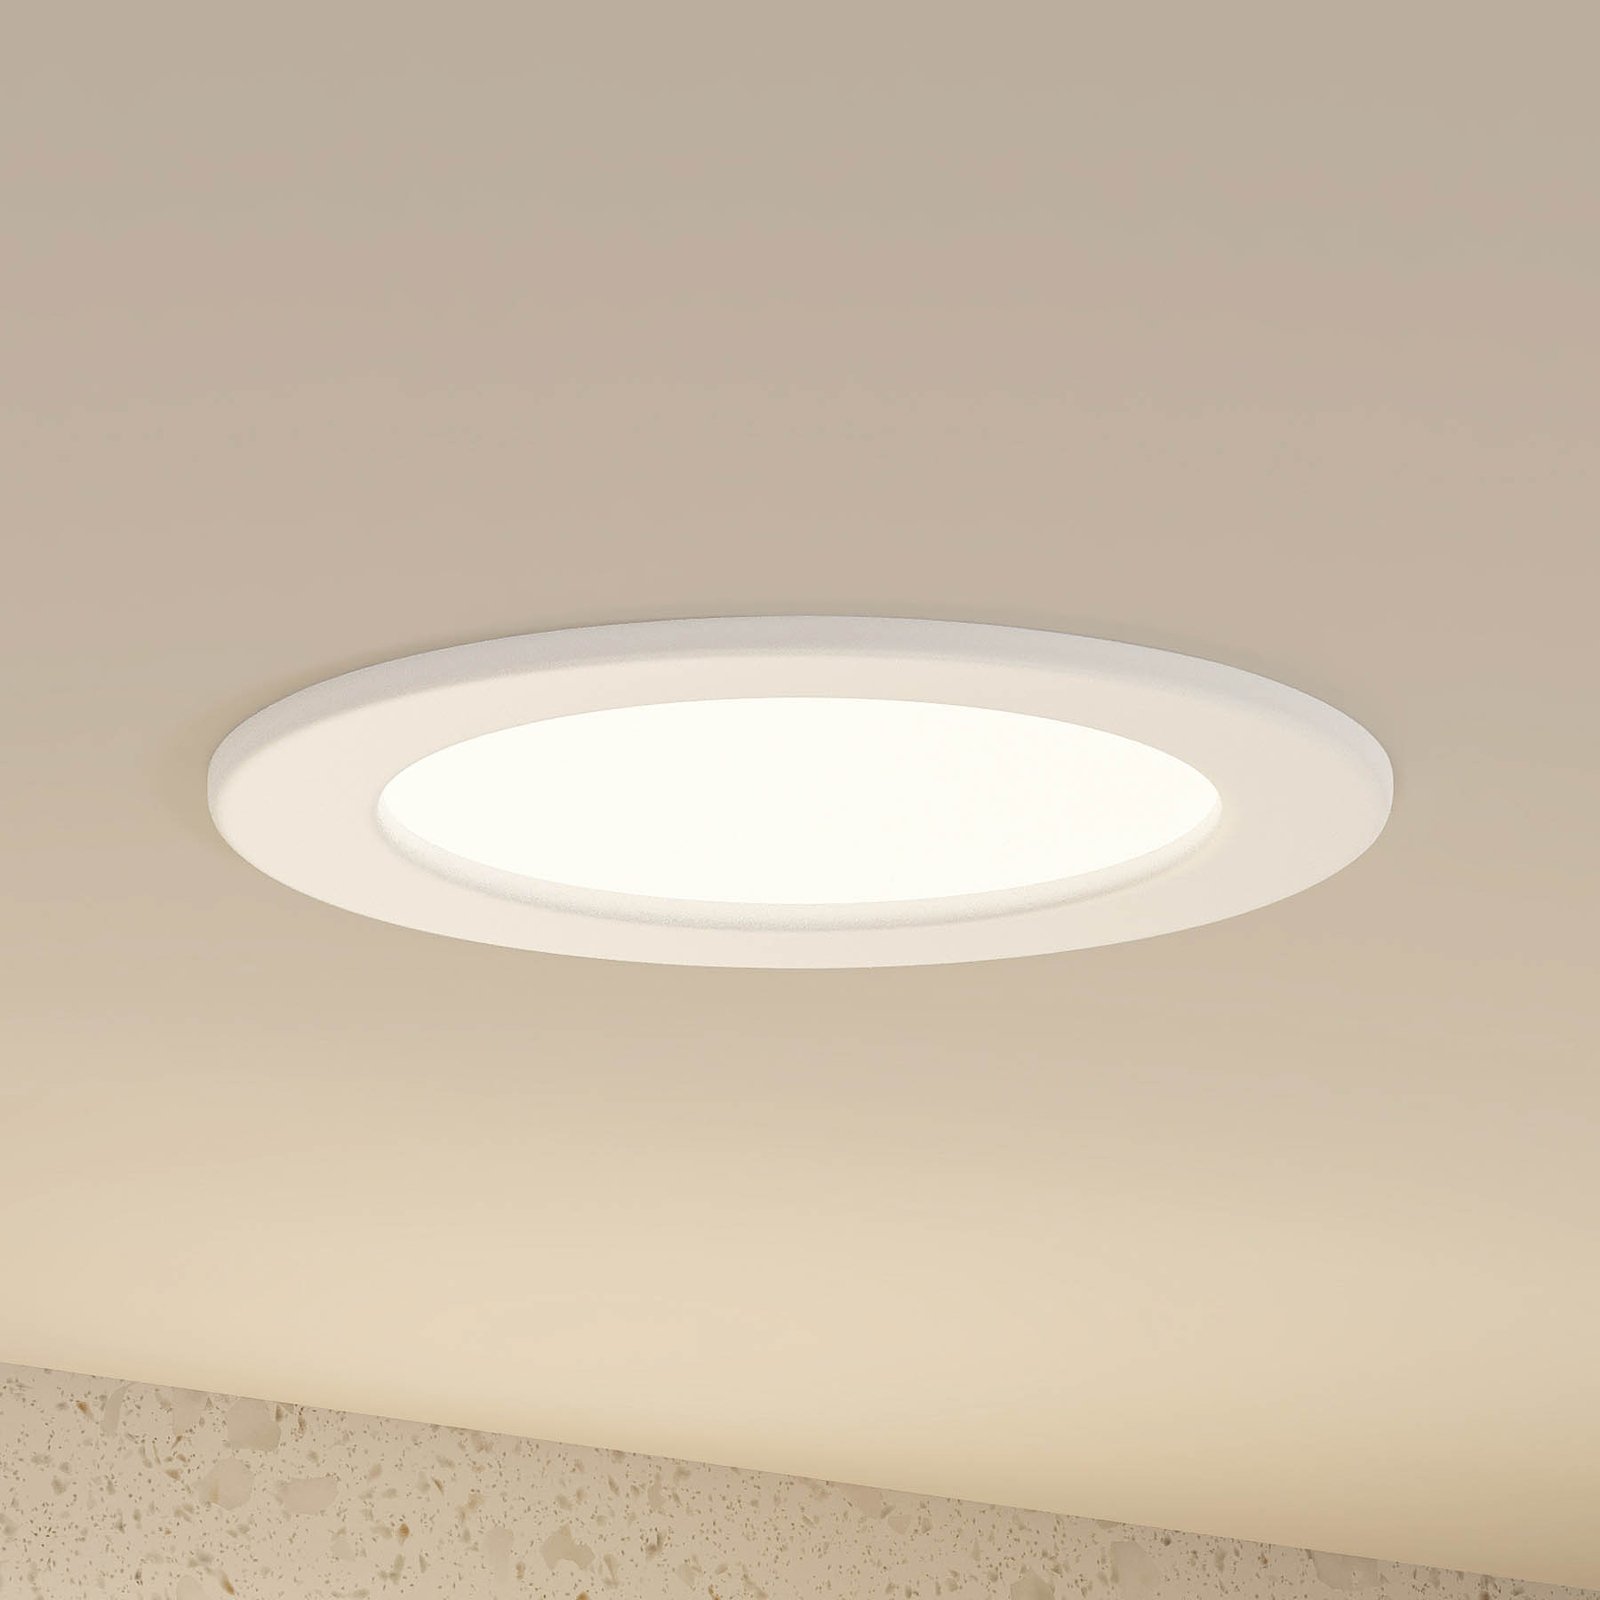 Prios Cadance lampe encastrée LED blanche, 17 cm